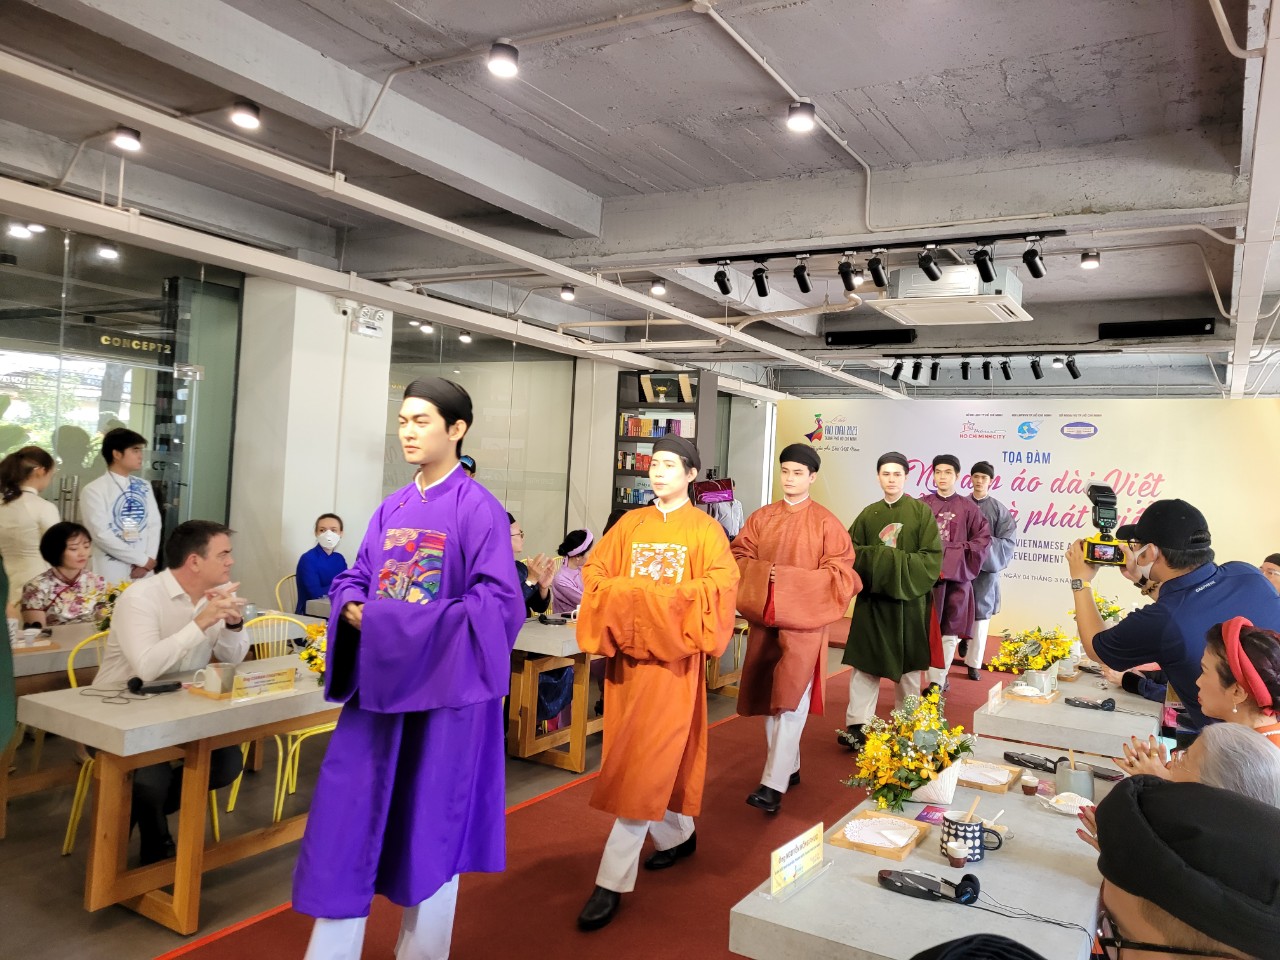 Bộ sưu tập áo dài ngũ thân của thương hiệu Năm Tuyền được trình diễn tại sự kiện